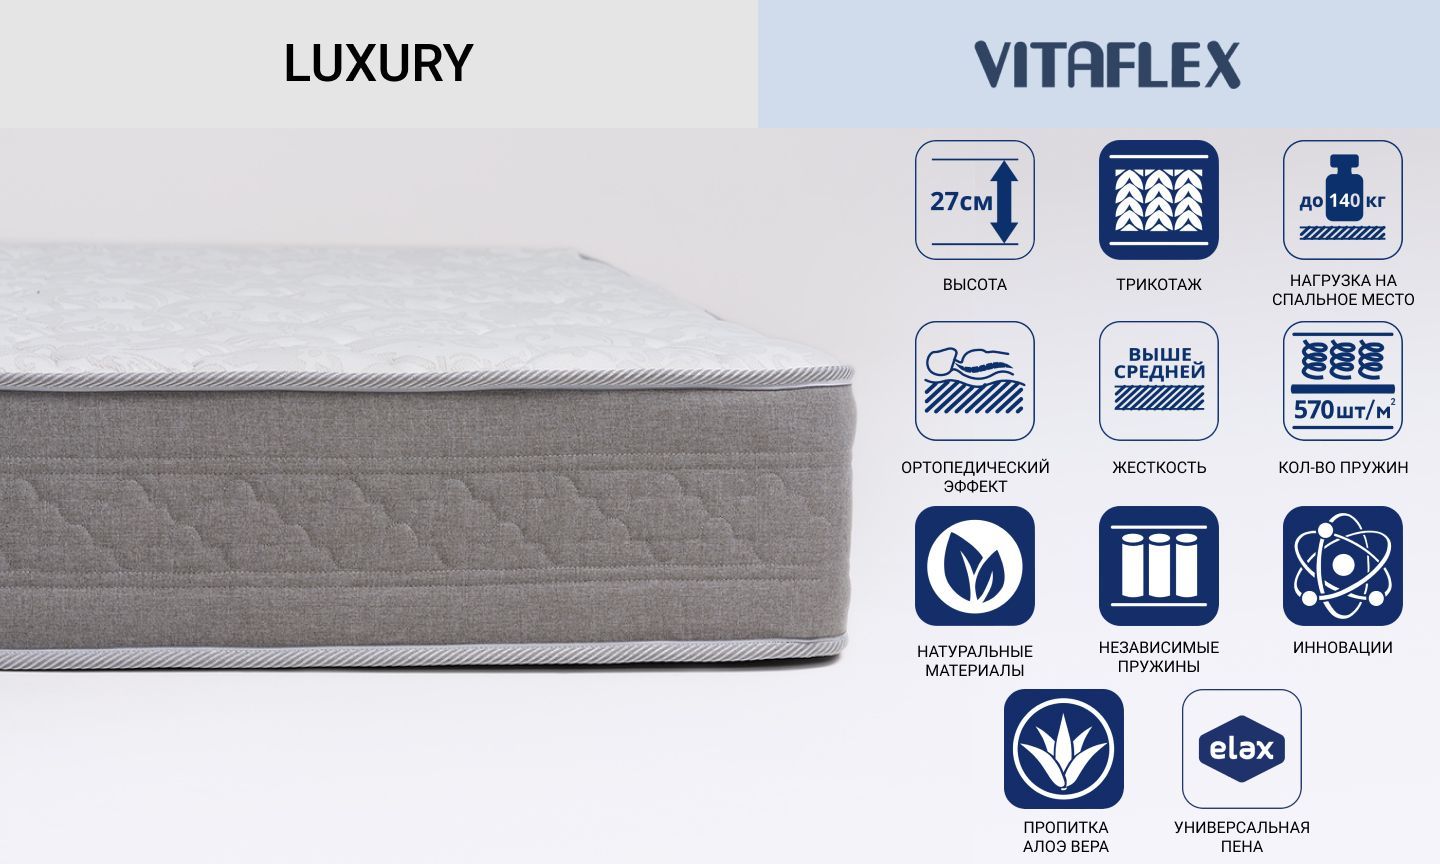 Односторонний матрас Vitaflex серии Luxury с независимыми пружинами